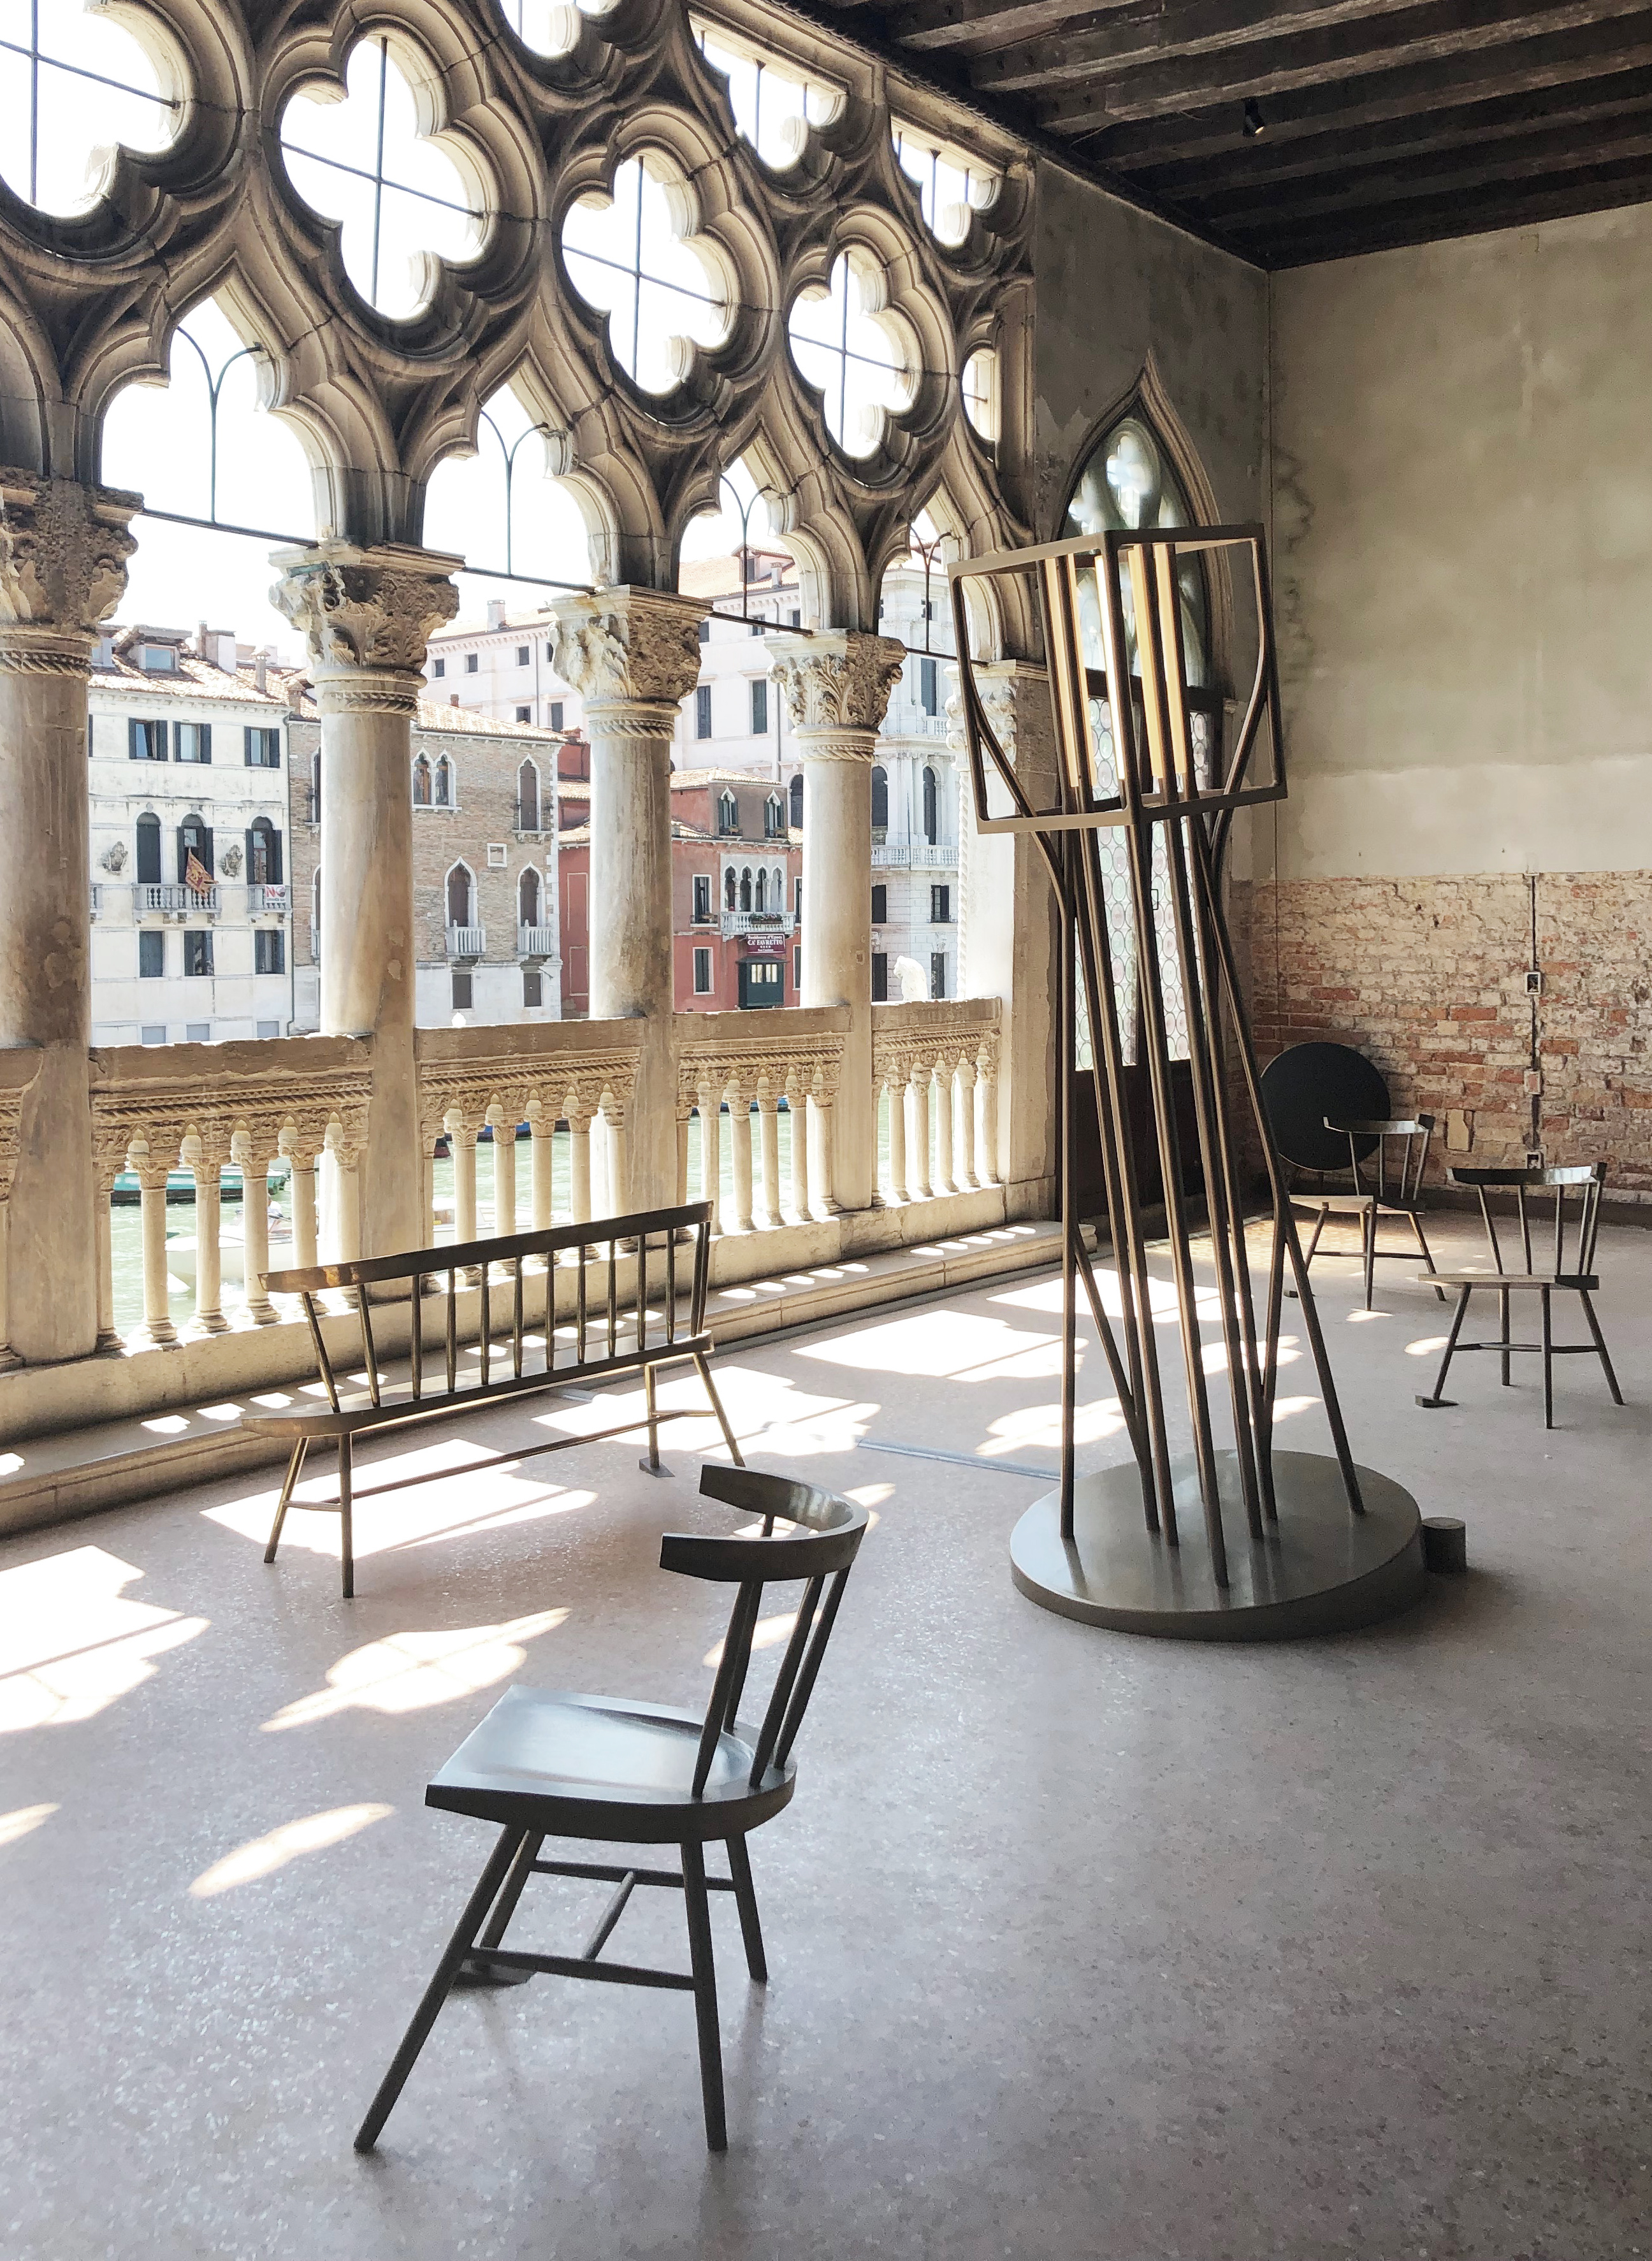 DYSFUNCTIONAL exhibition Gallery Giorgio Franchetti alla Ca' d'Oro